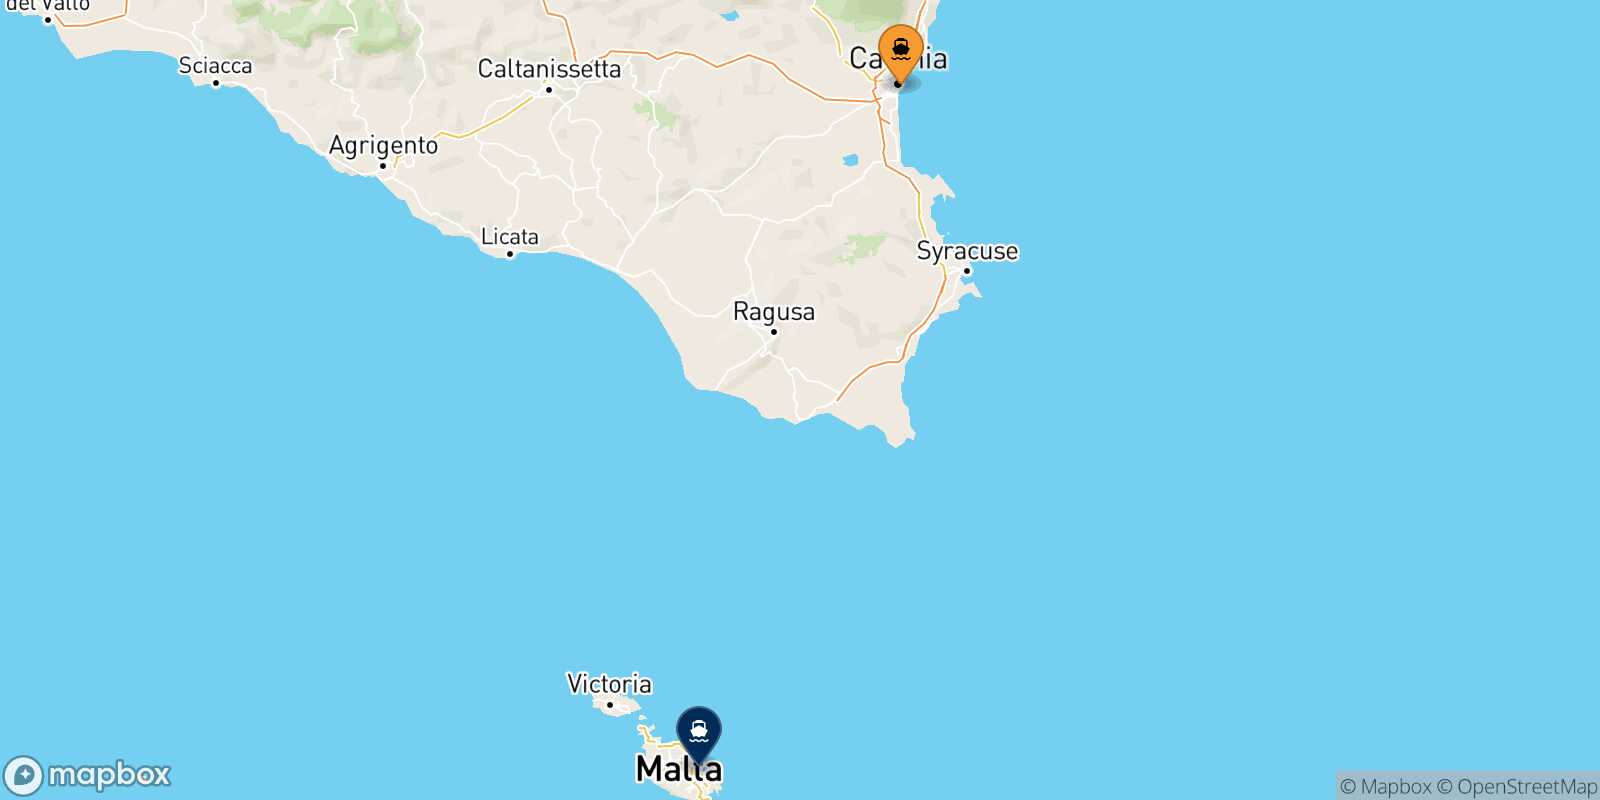 Mappa delle destinazioni raggiungibili da Catania